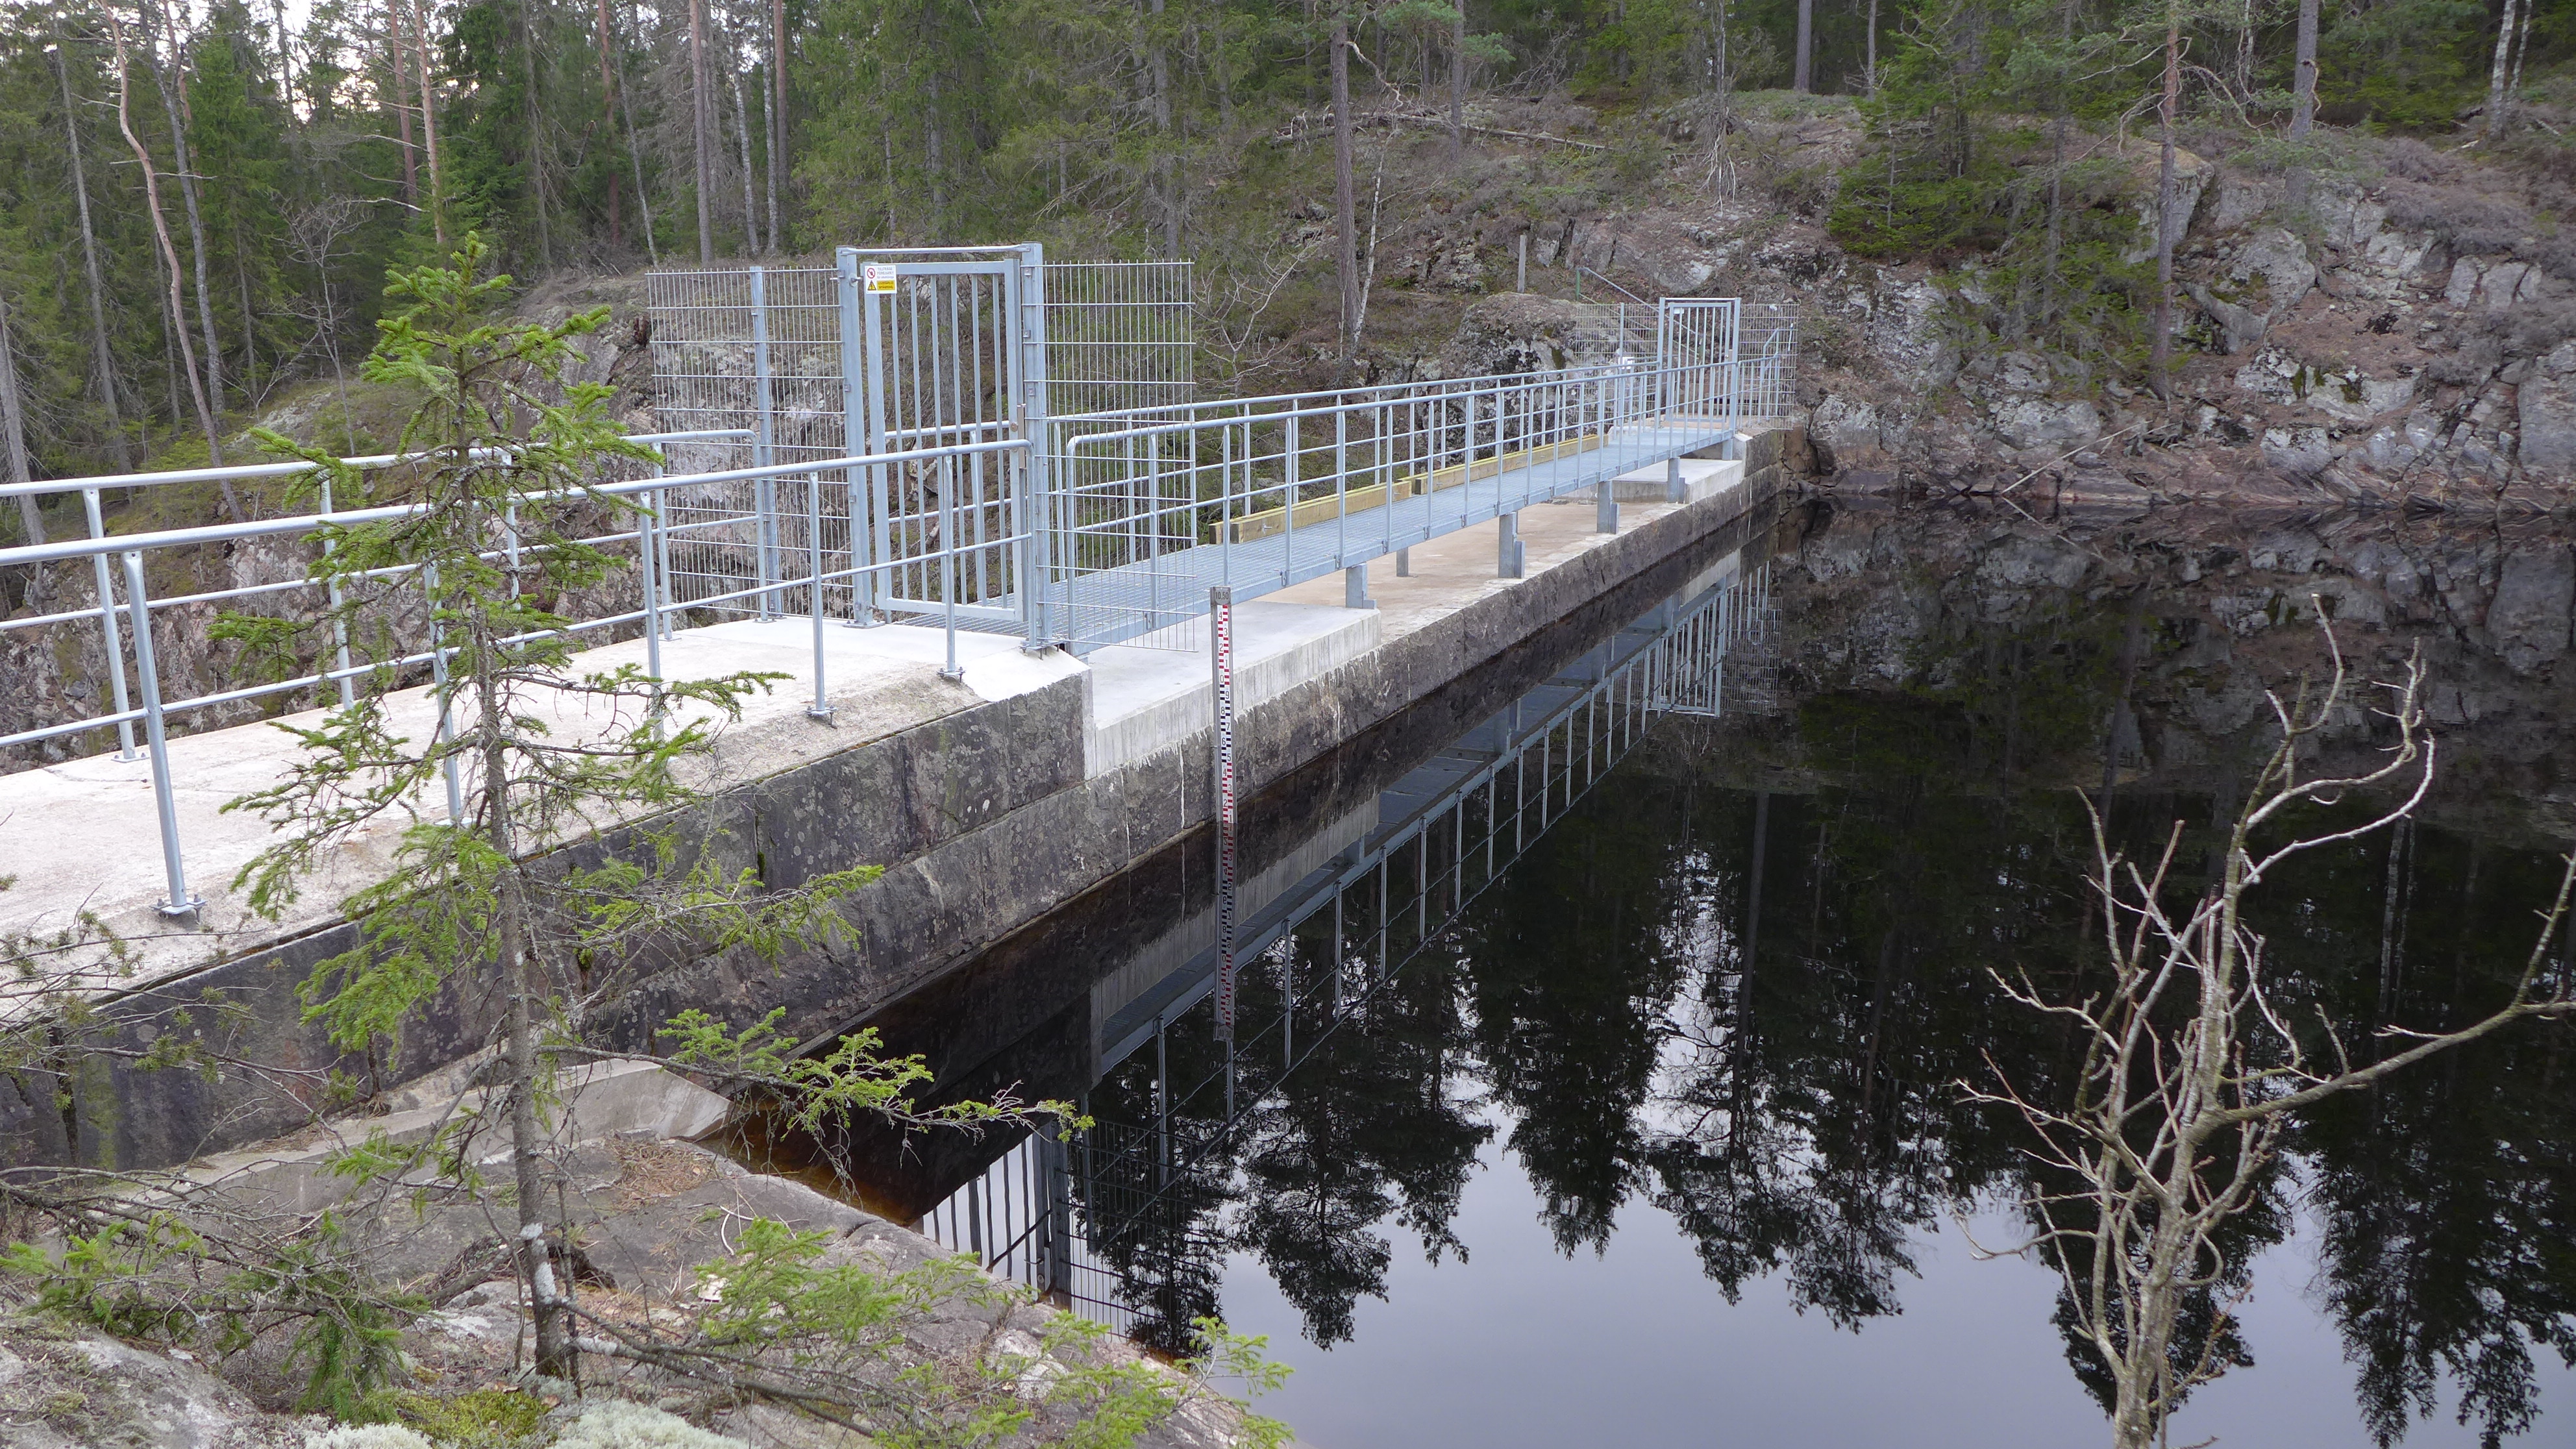 Vid höga flöden i Storsjön kan vattnet avbördas via regleringsdammen Store dammen. Överskottsvattnet rinner då i Lillåns oftast torrlagda åfåra och når Viskan nedströms kraftverket.